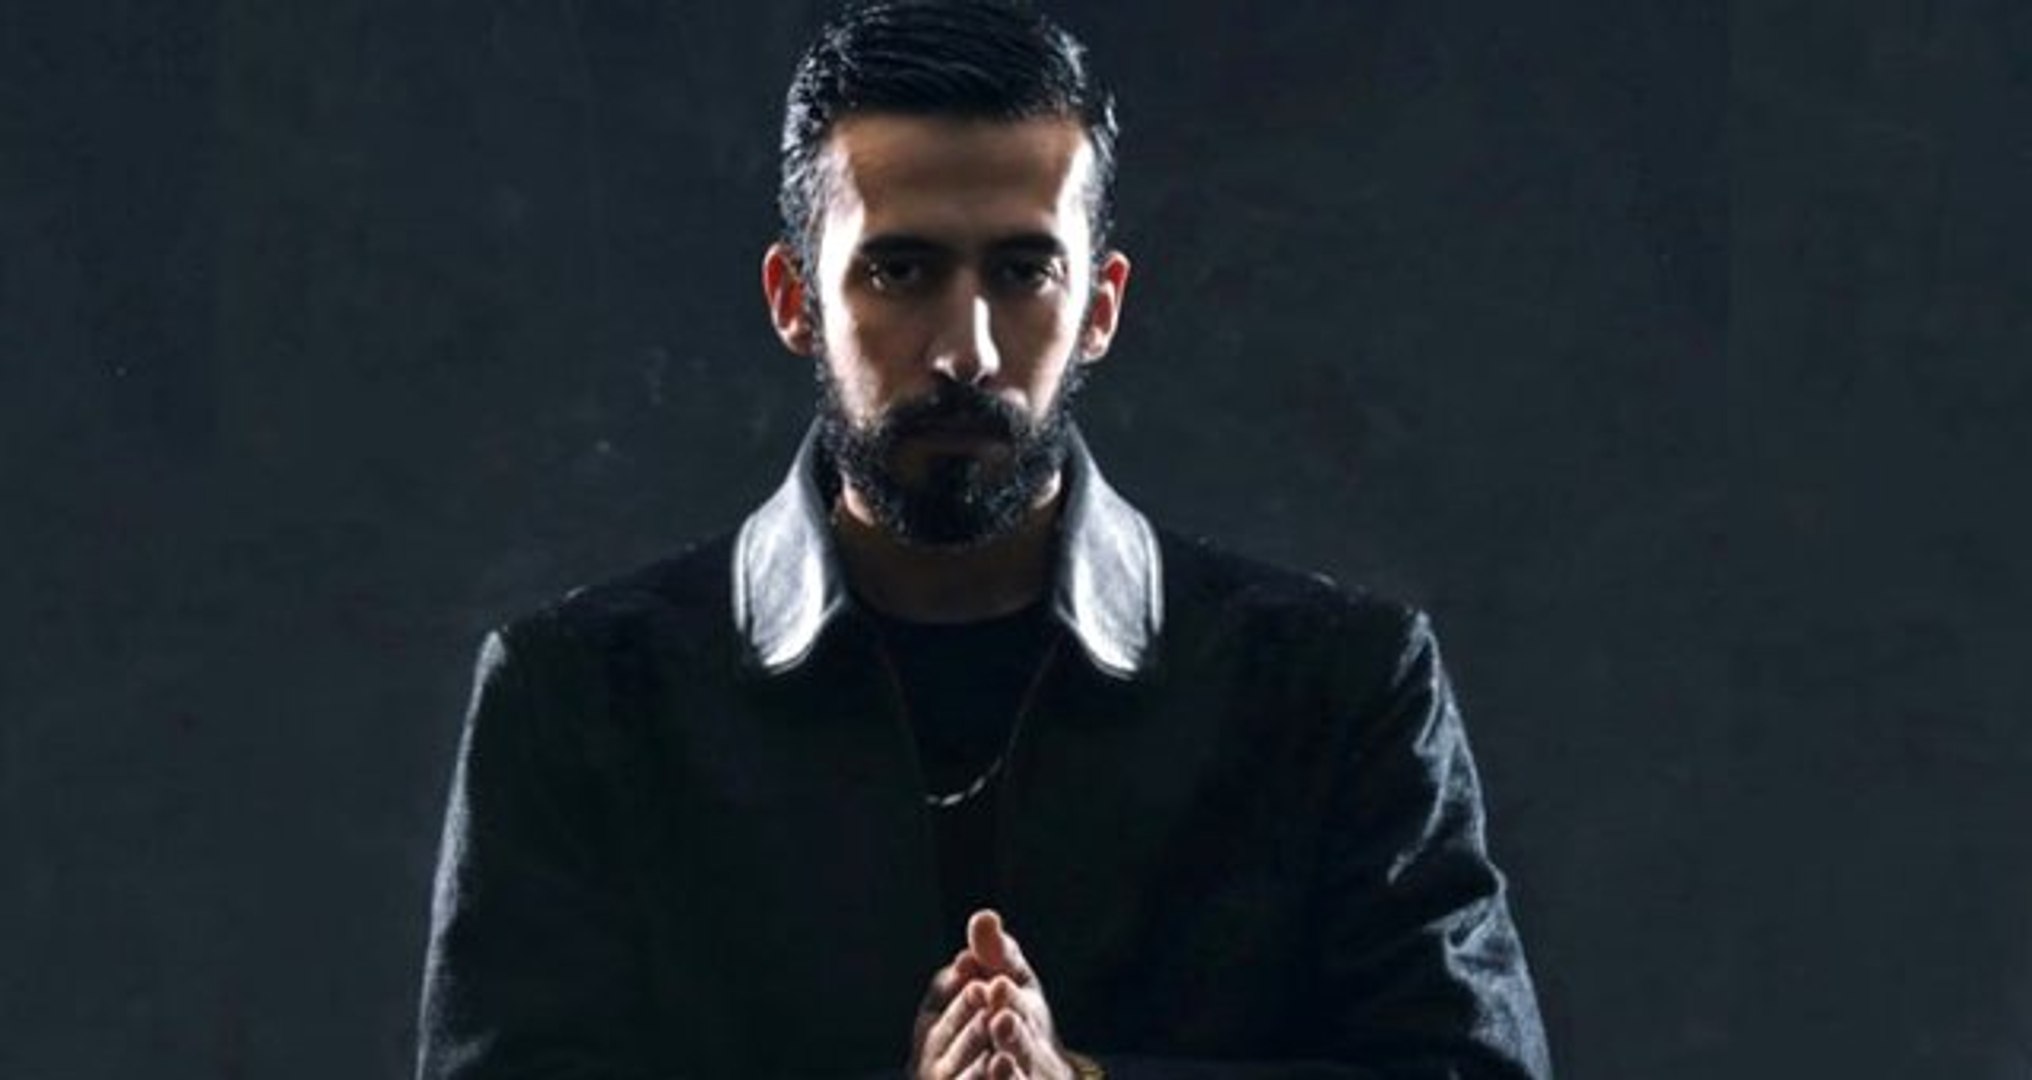 Hayatın Heyecanı Yok" Diyen Rap Şarkıcı Gazapizm Kokainle Yakalandı -  Dailymotion Video